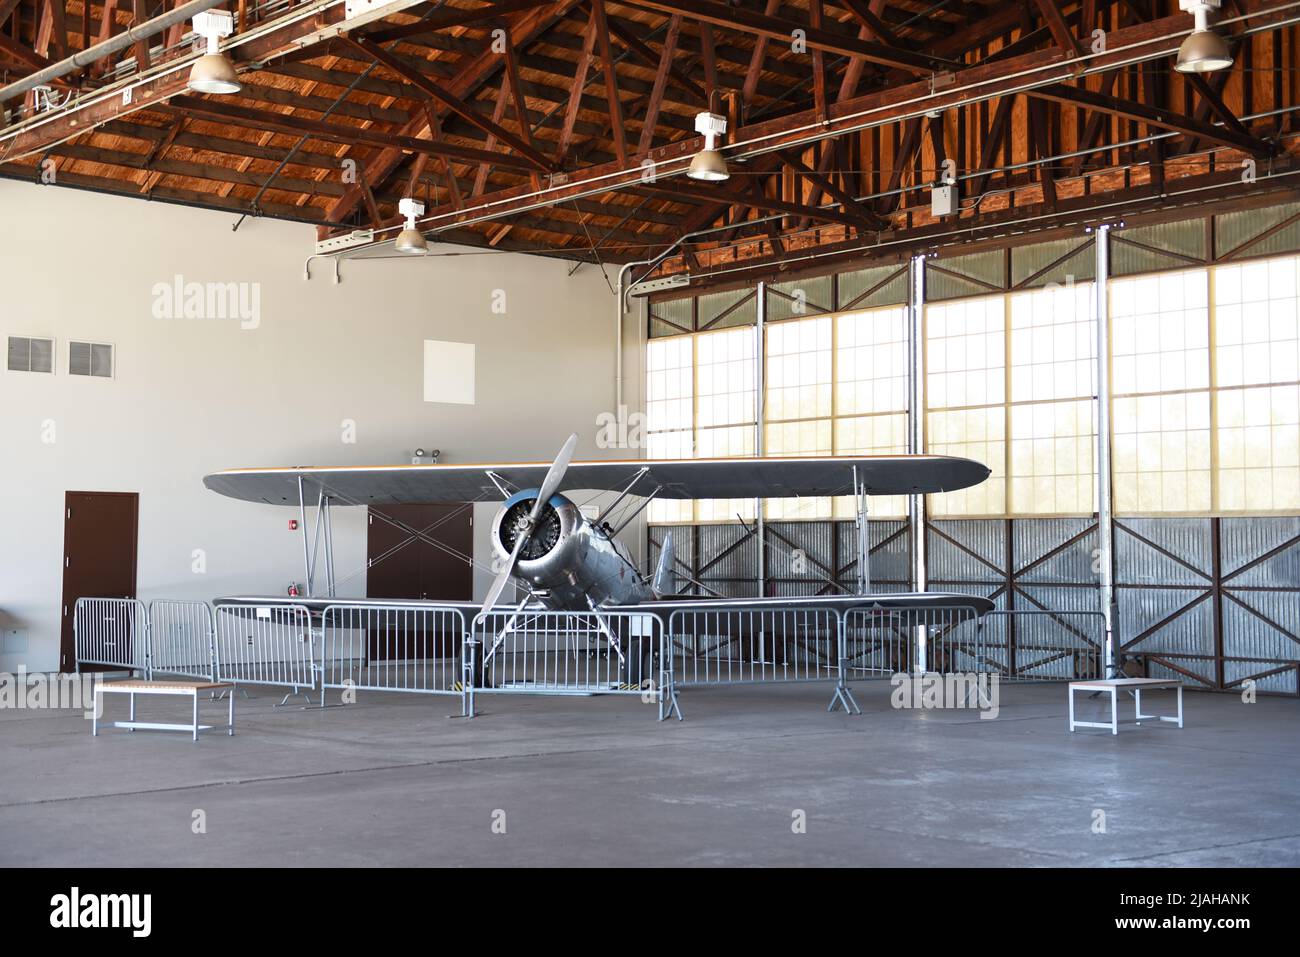 IRVINE, CALIFORNIE - 31 JANV. 2020: N3N-3 Biplane d'époque canarienne exposée dans le hangar du Orange County Great Park. Banque D'Images